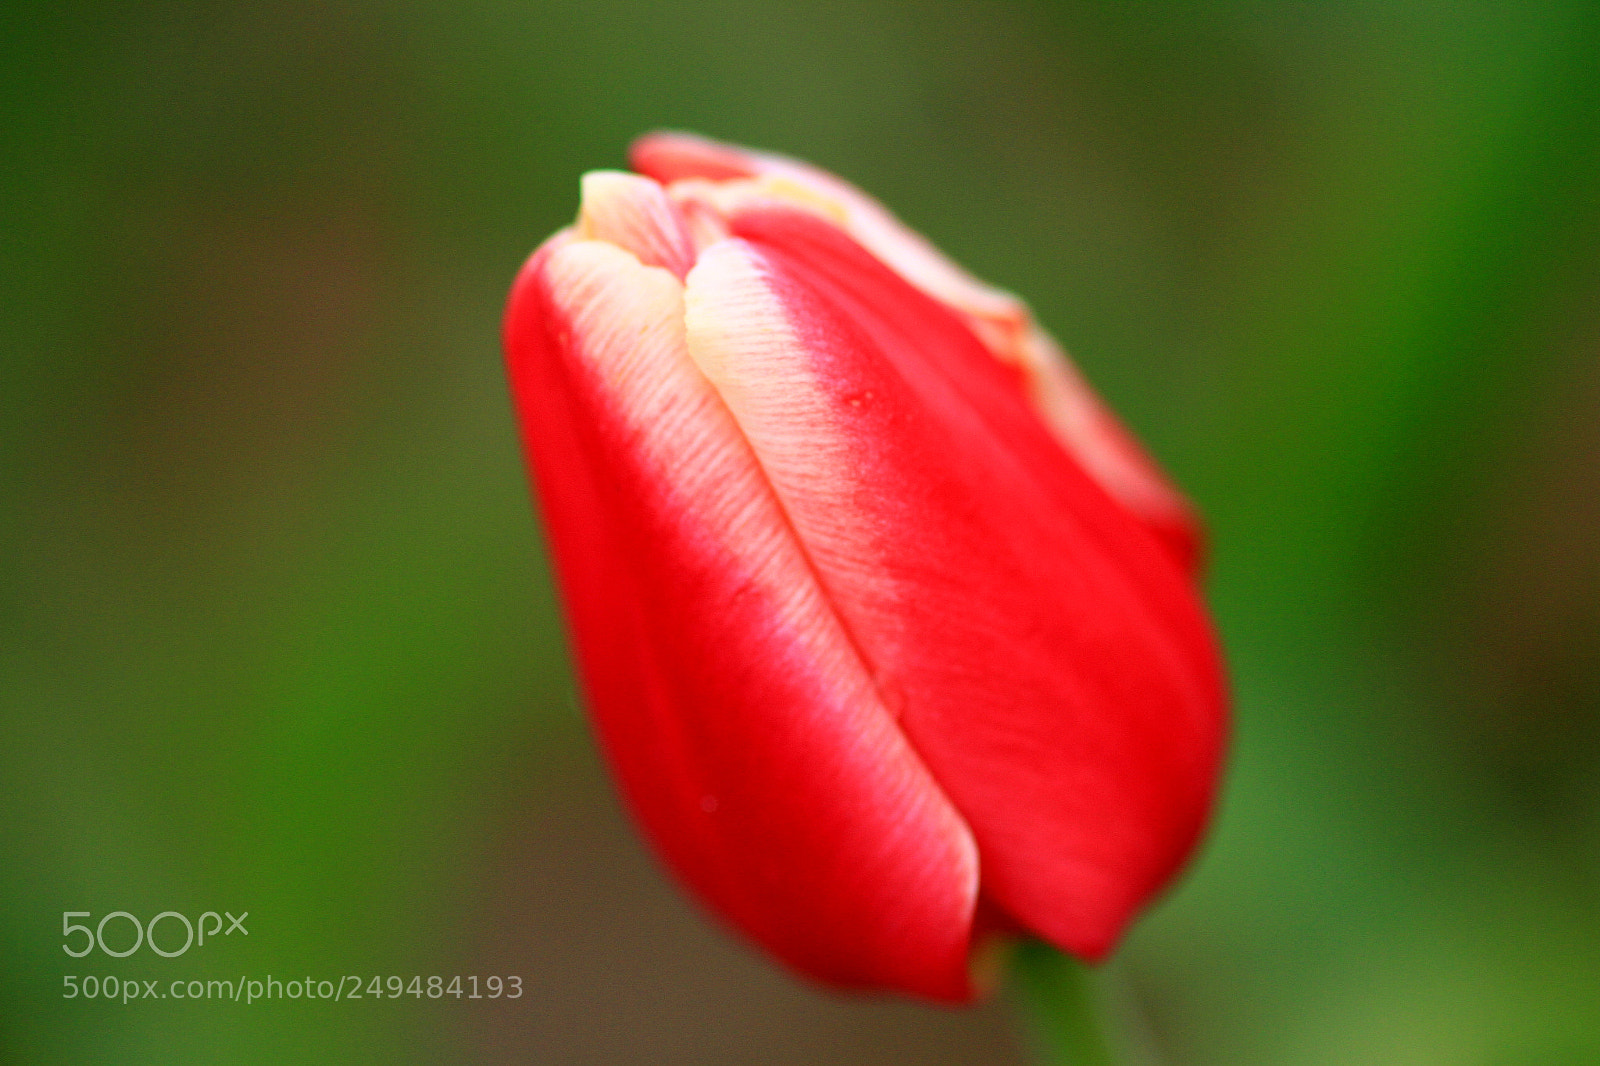 Canon EOS 7D sample photo. Garden tulip photography